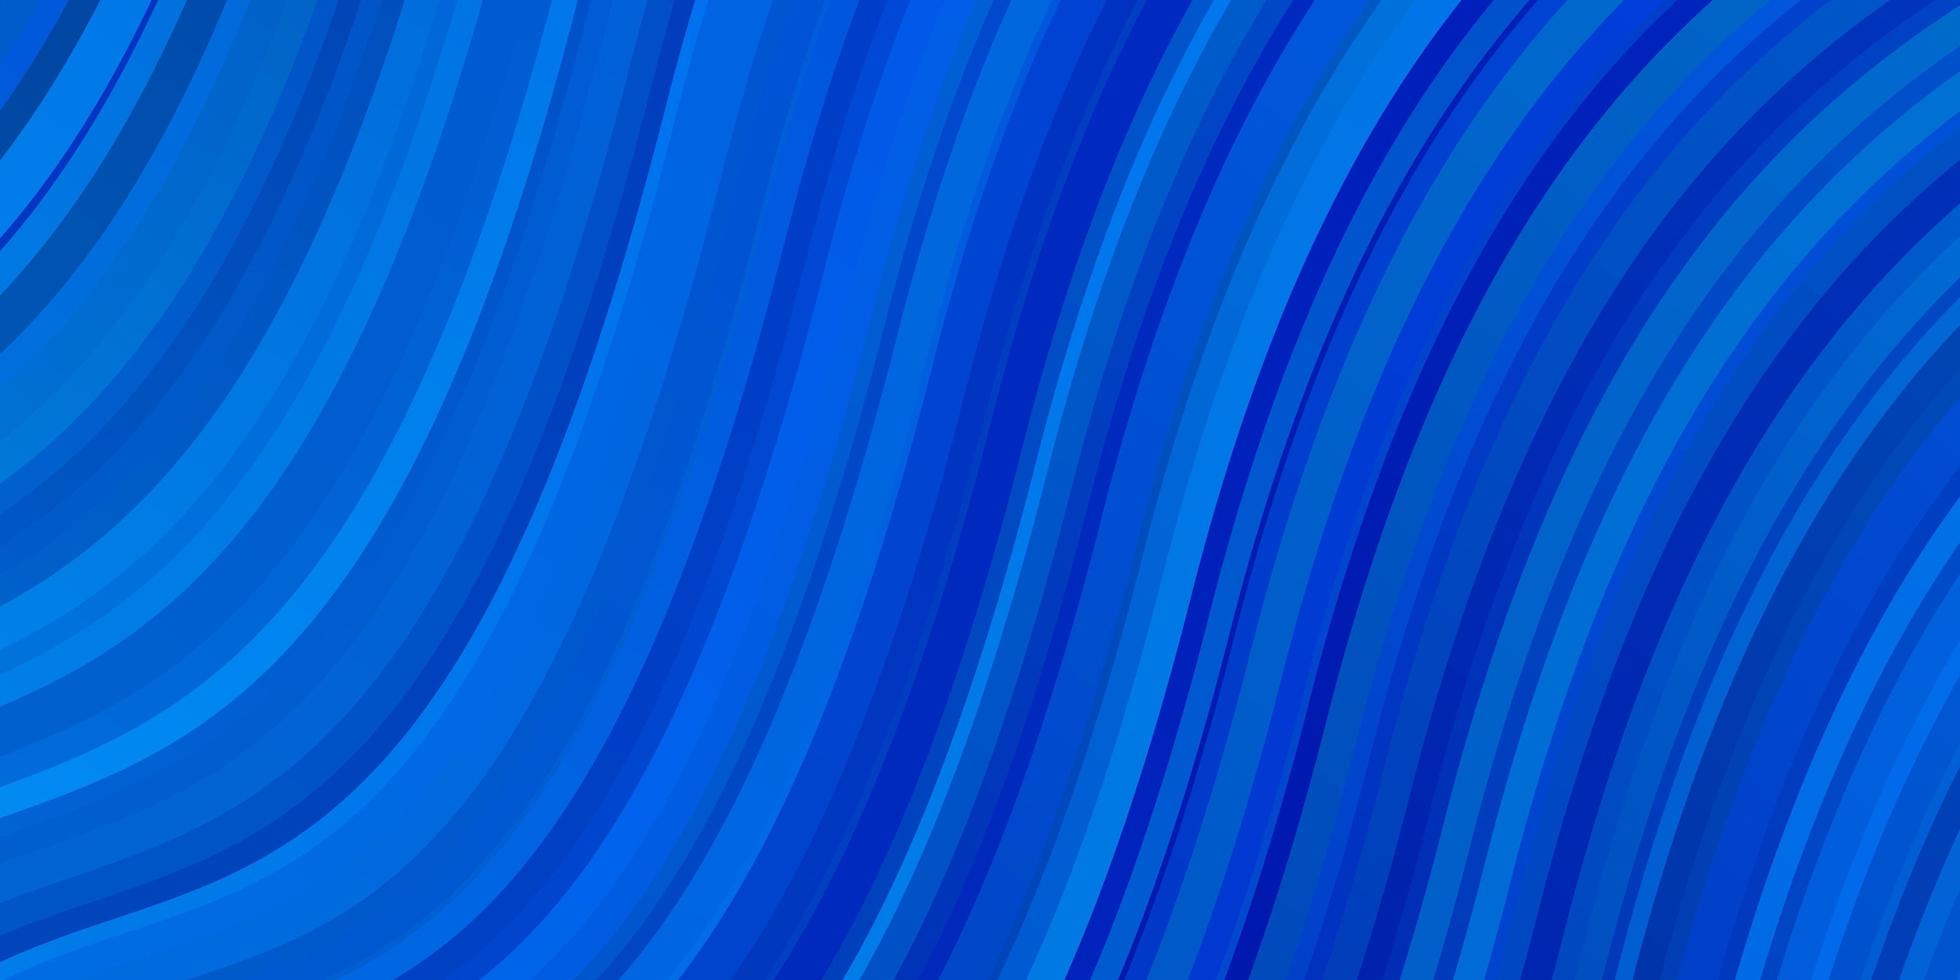 layout vettoriale azzurro con arco circolare.